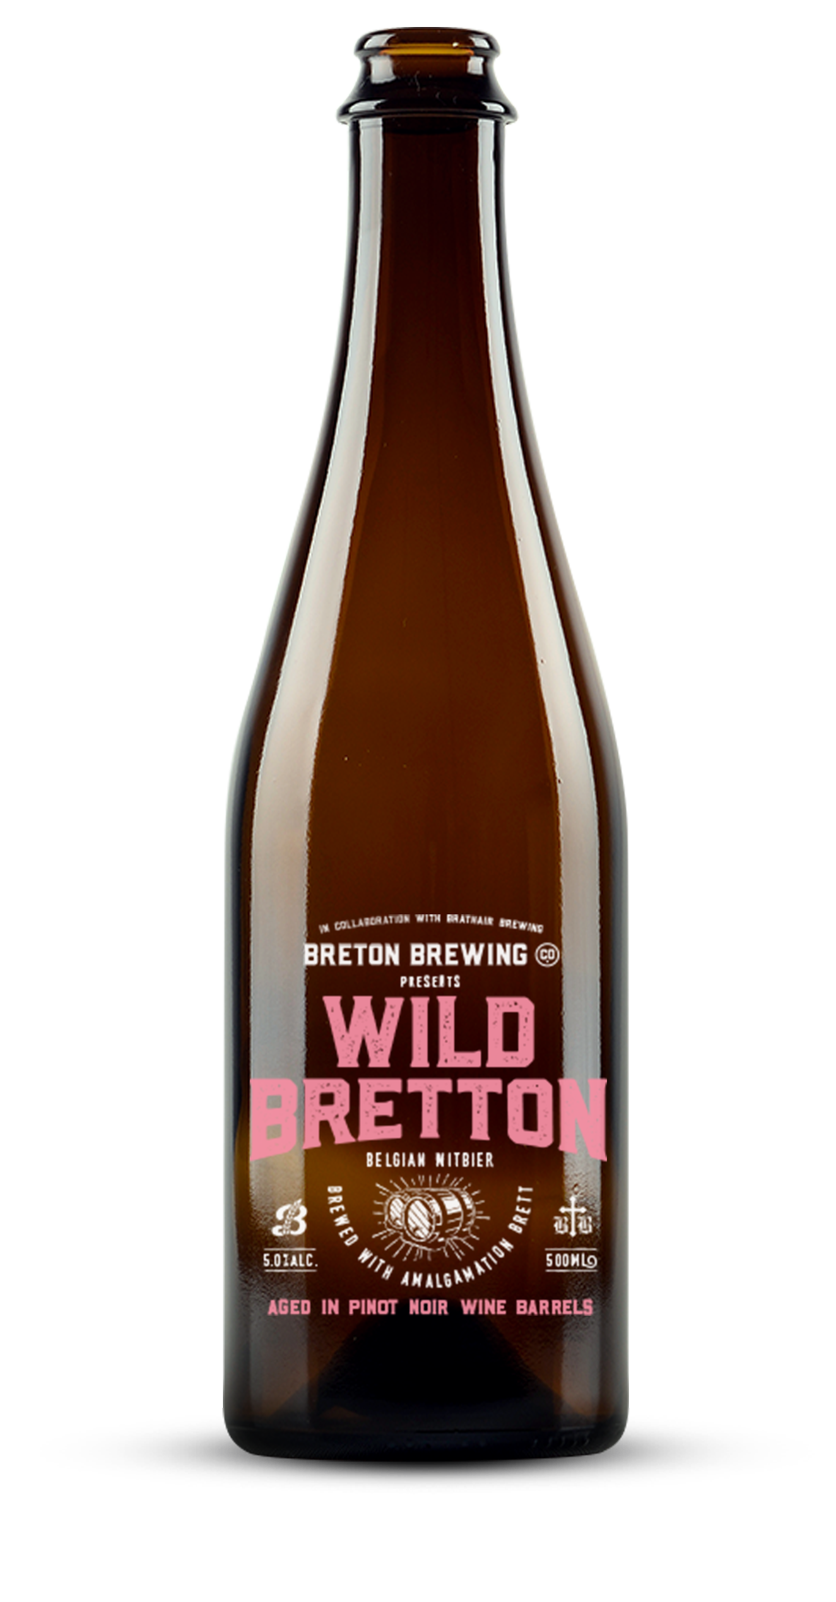 Wild Bretton Belgian Witbier – Pinot Noir